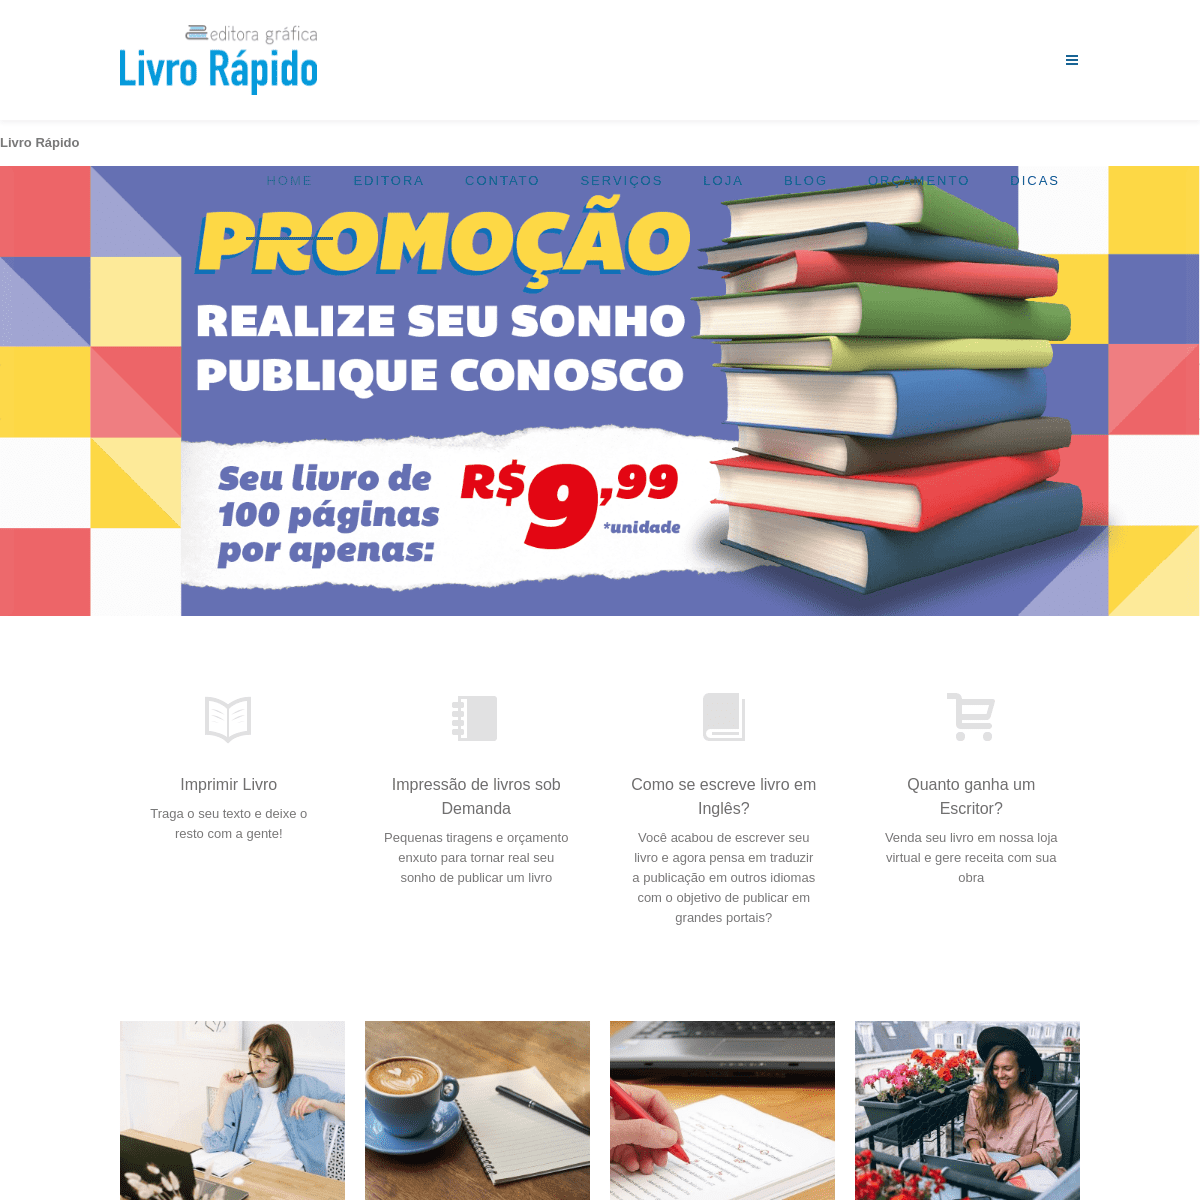 A complete backup of https://livrorapido.com.br